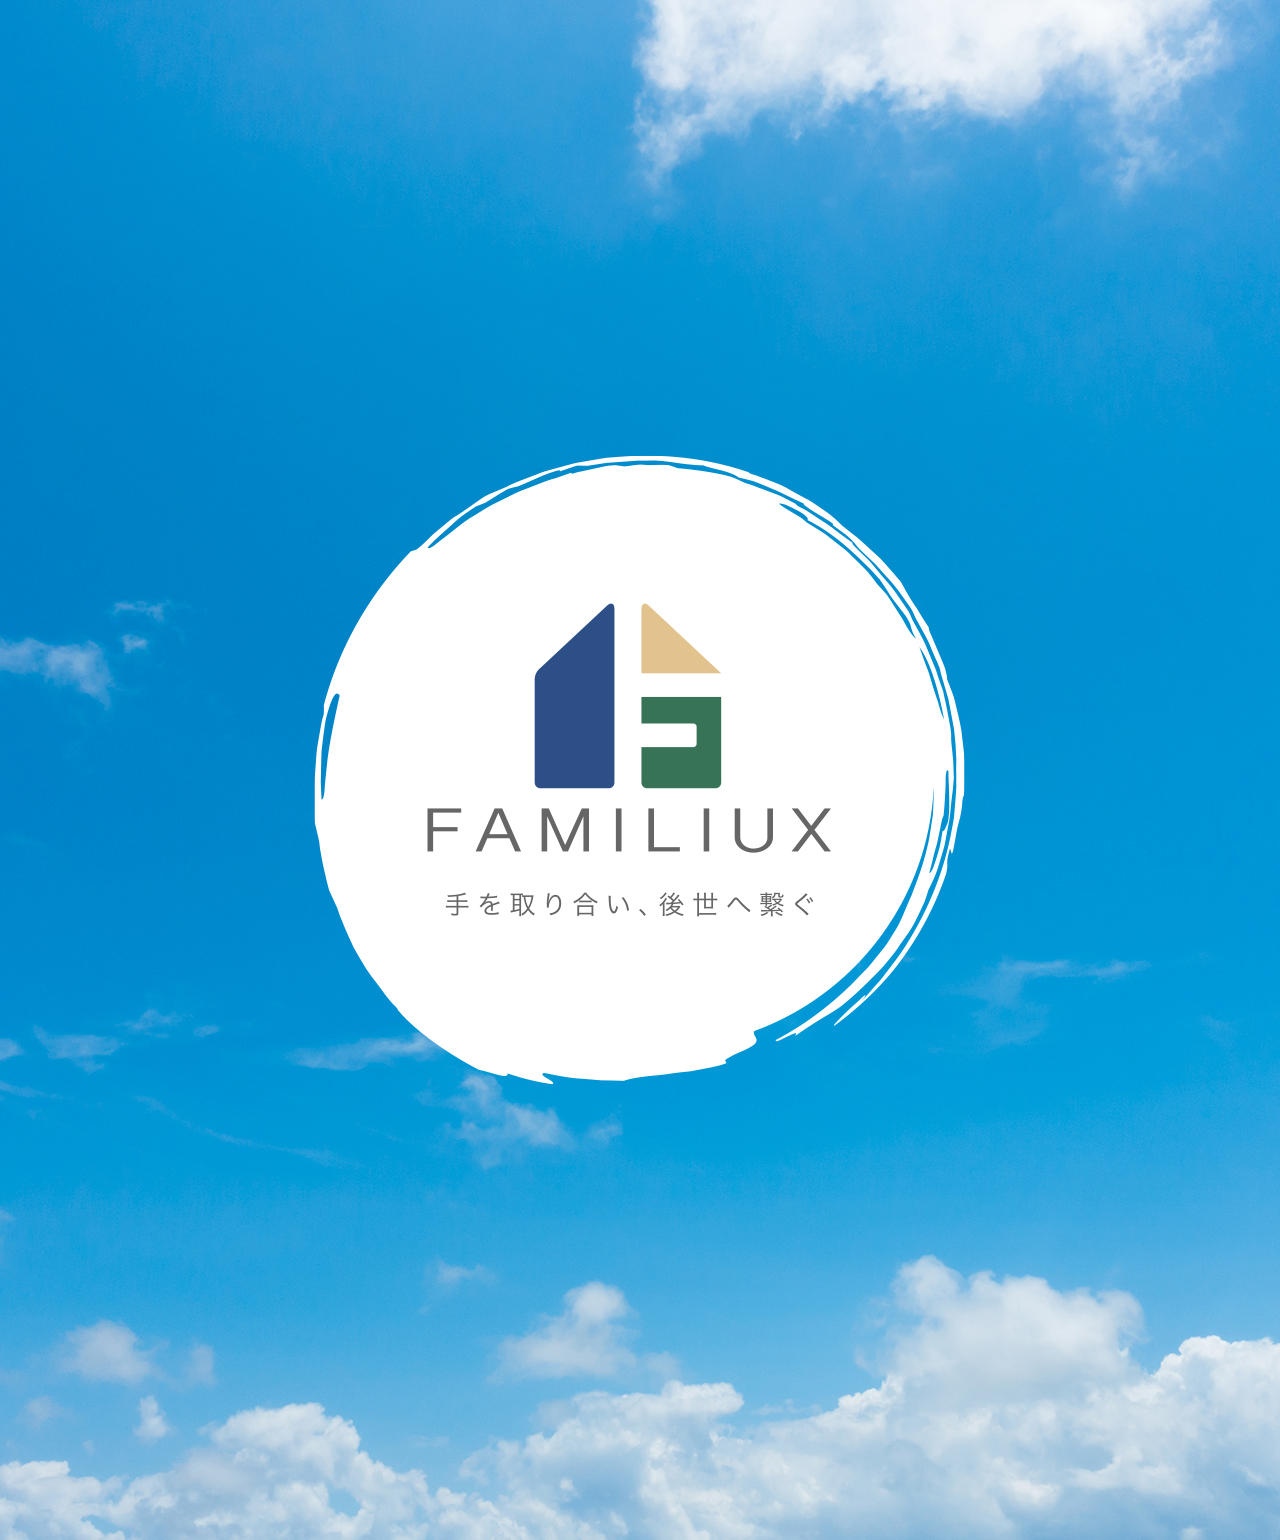 株式会社ファミリークス FAMILUX 手を取り合い、後世へ繋ぐ